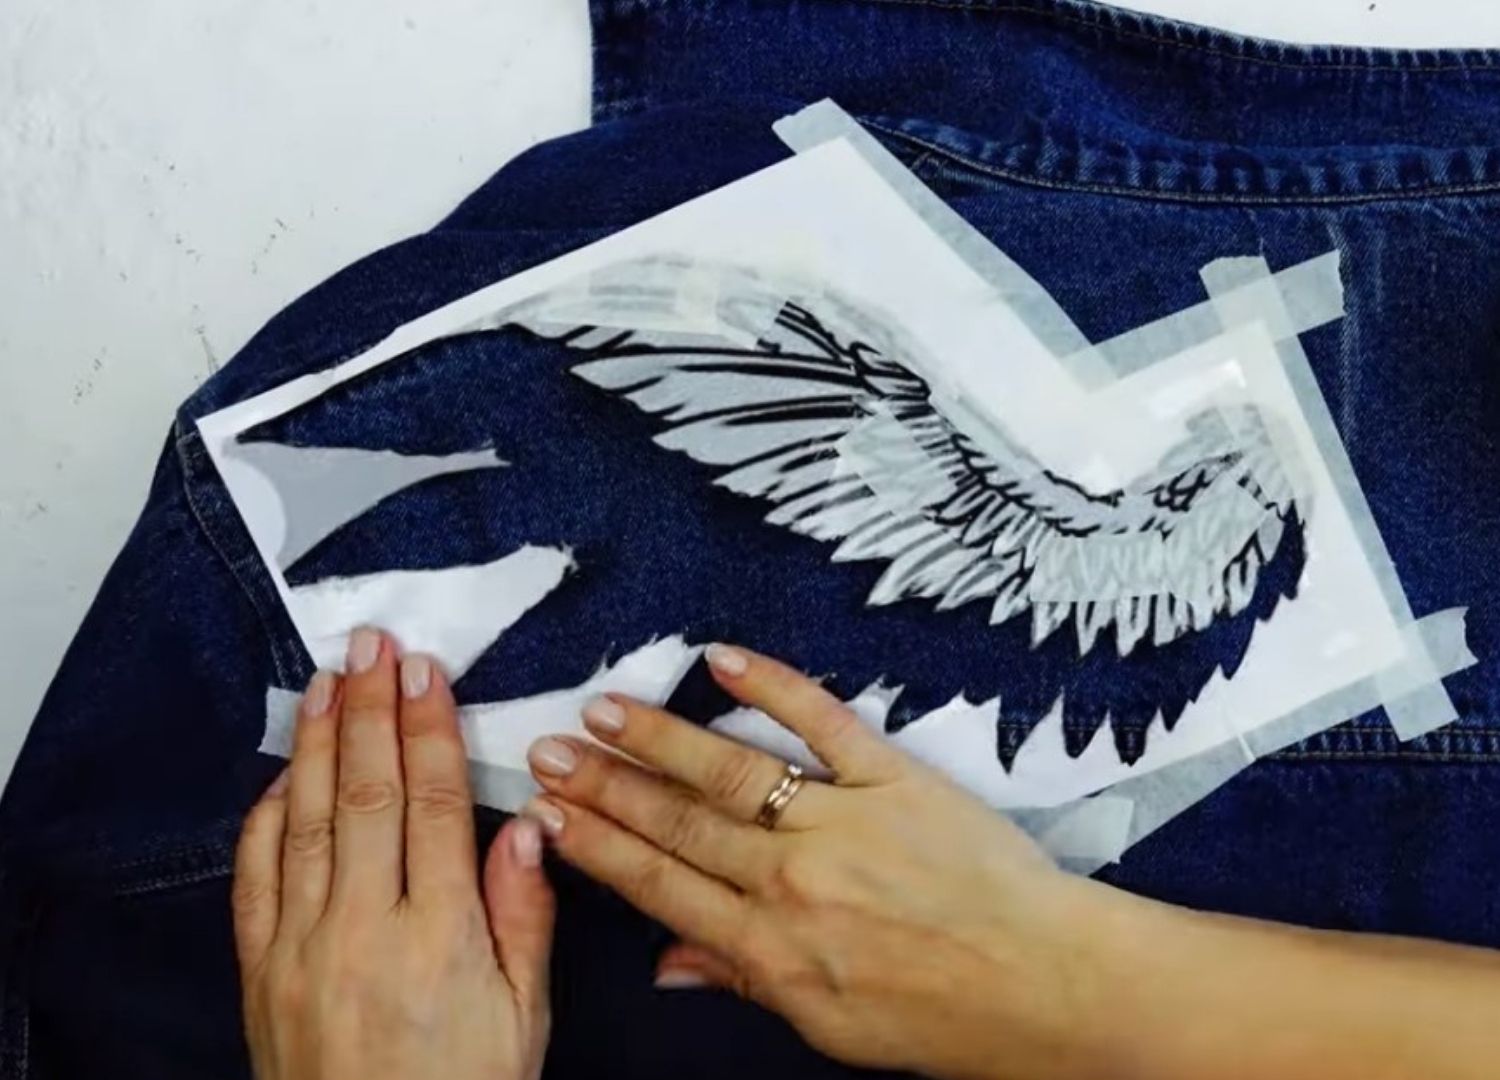 Вот, твои крылья! Кастомизируем джинсовую куртку: трафаретный рисунок на куртке акриловыми красками